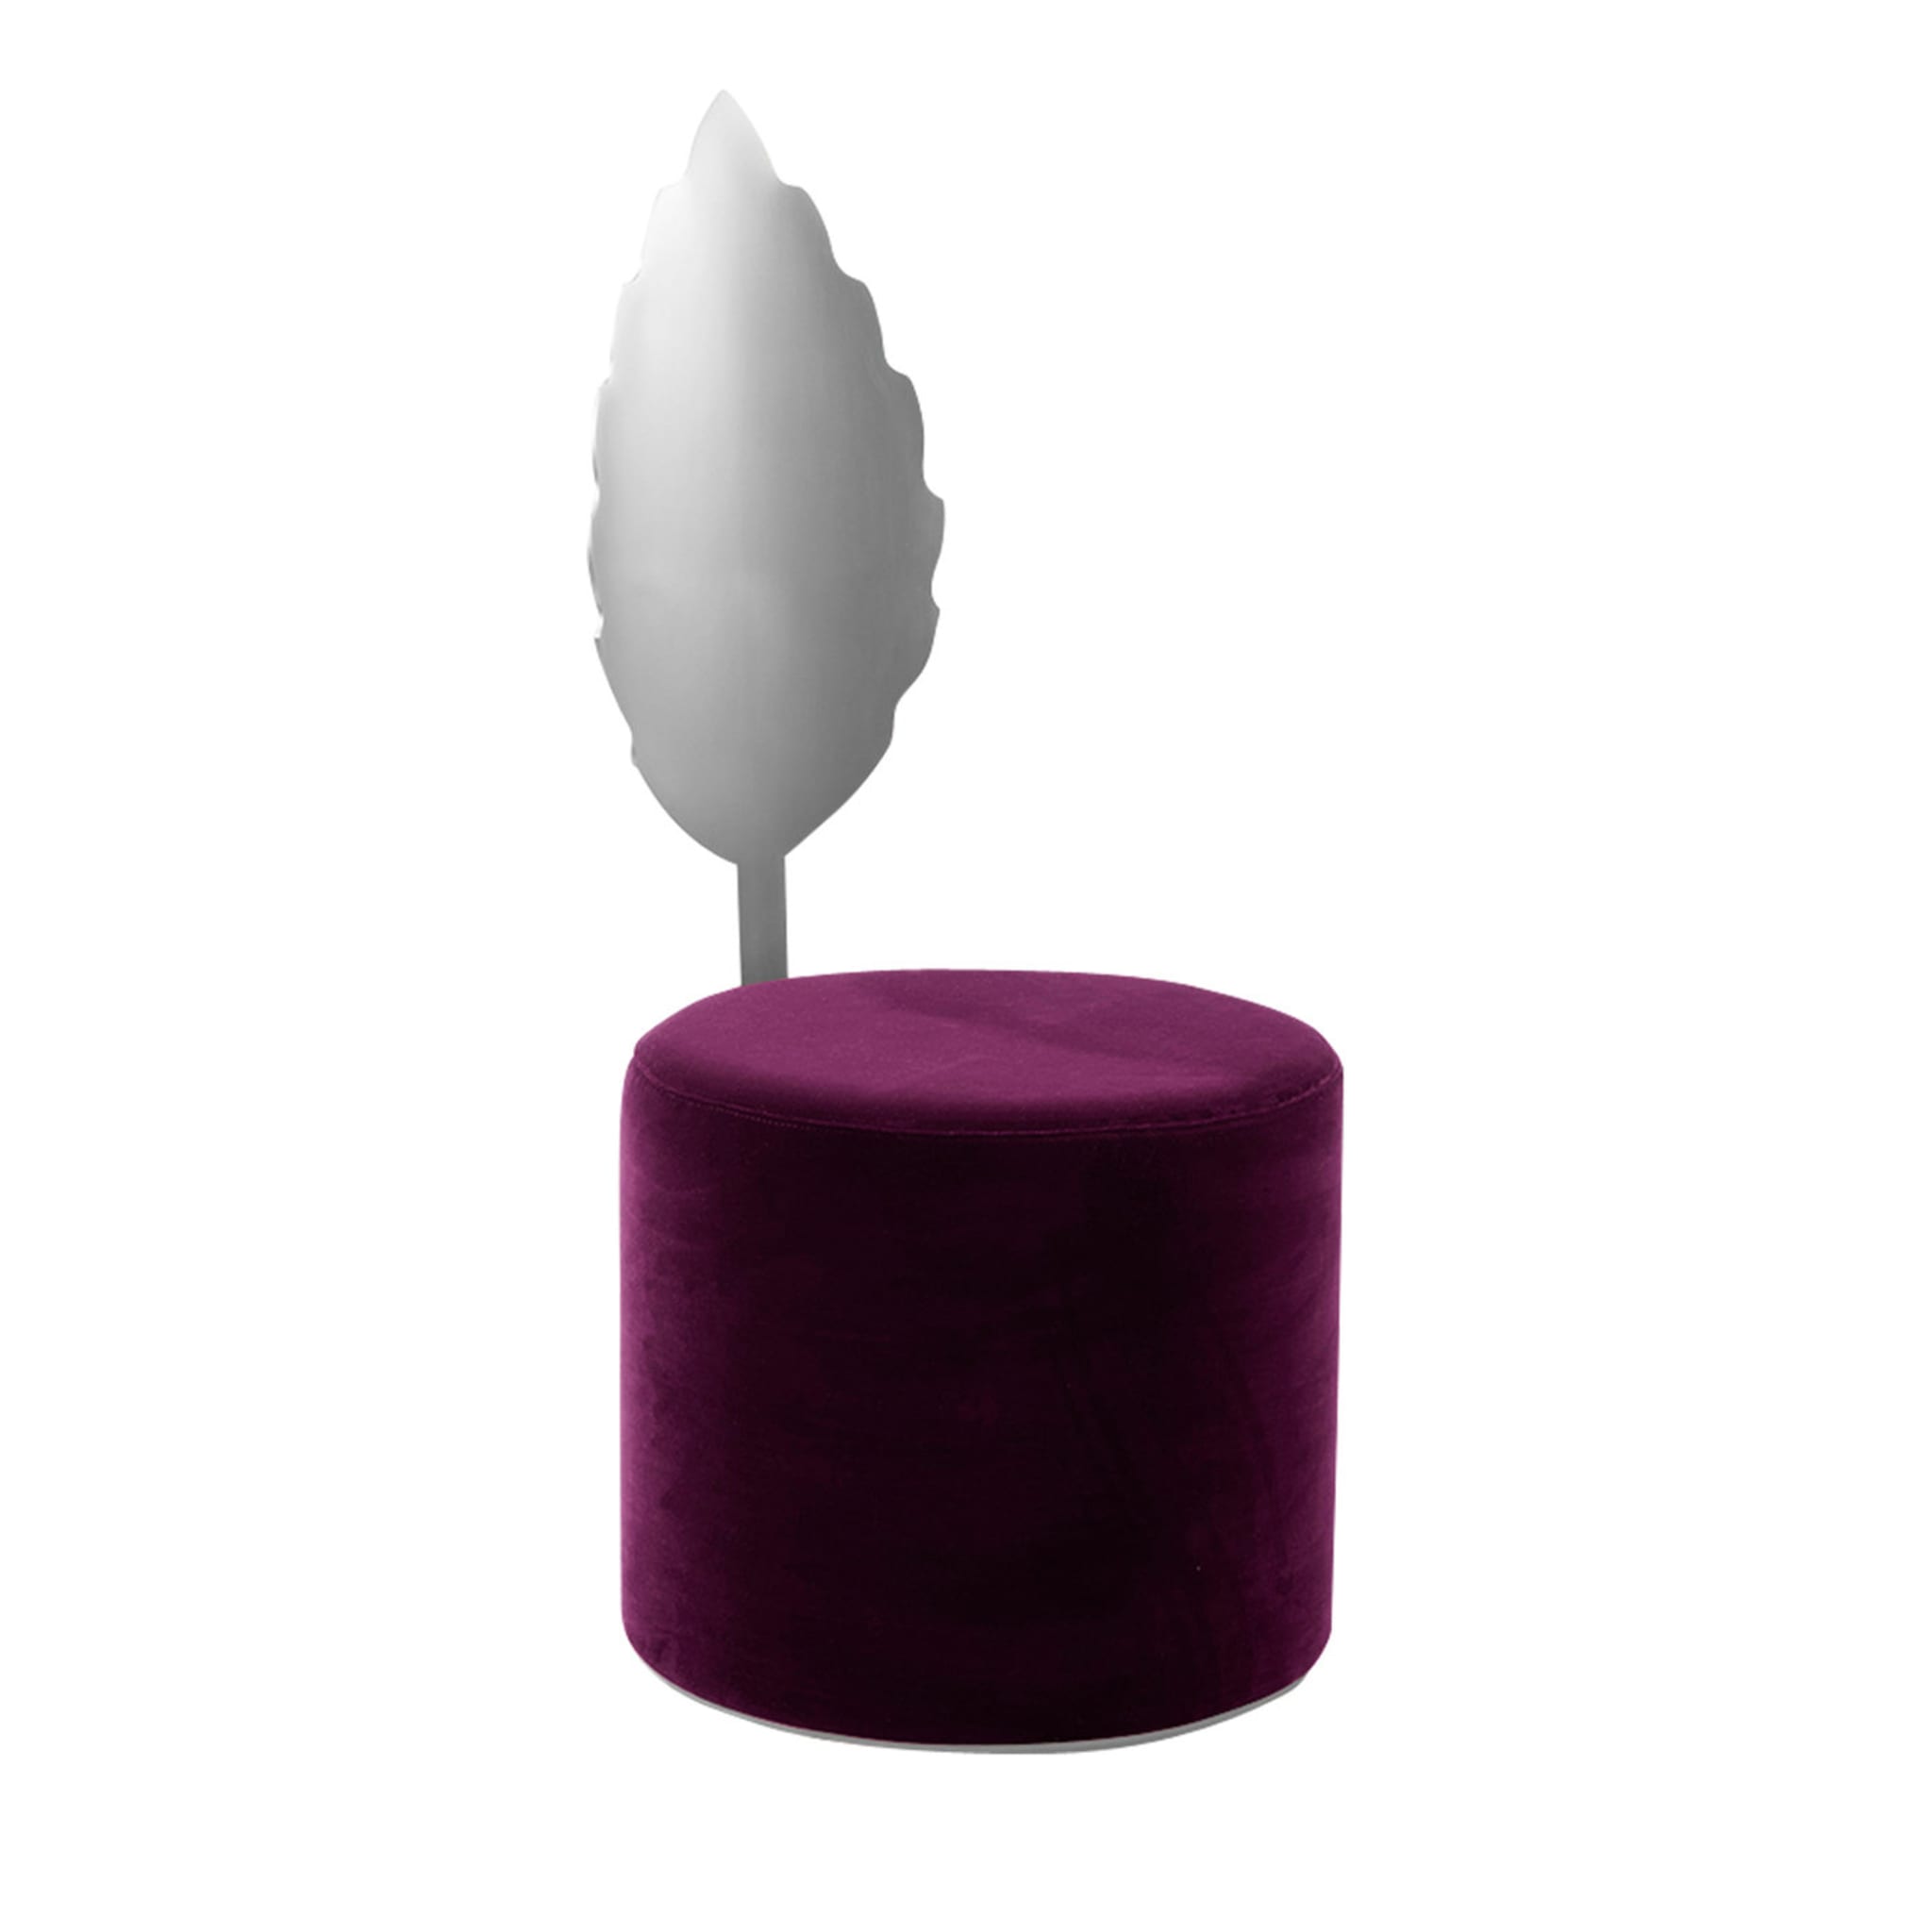 Pouf Holly Purple #2 di Artefatto Design Studio - Vista principale